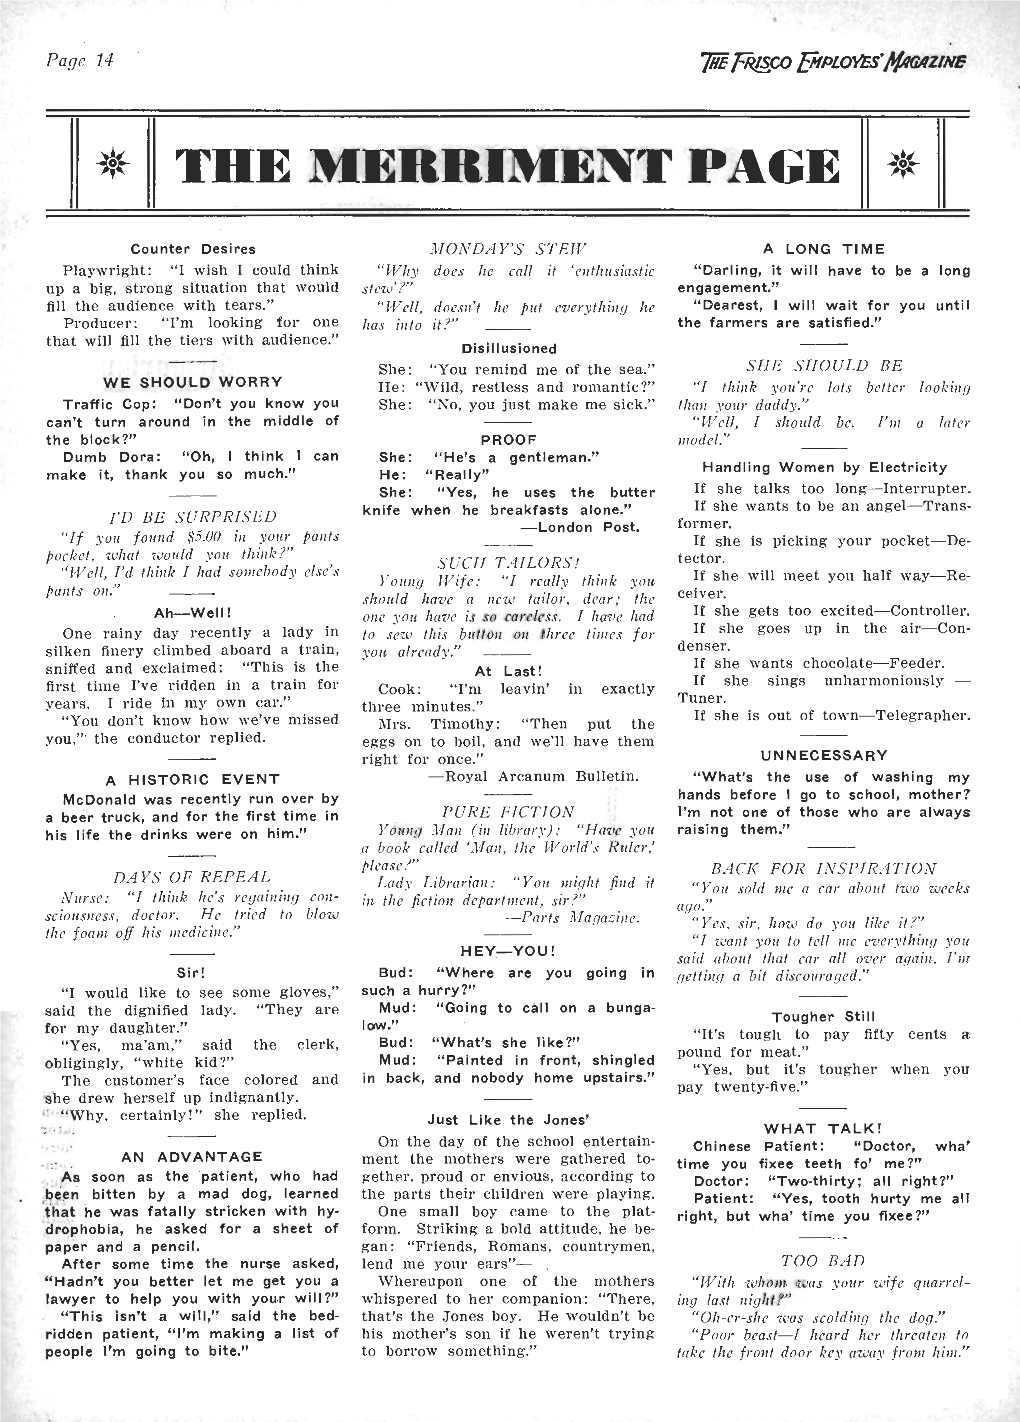 The Frisco Employes' Magazine, February 1934